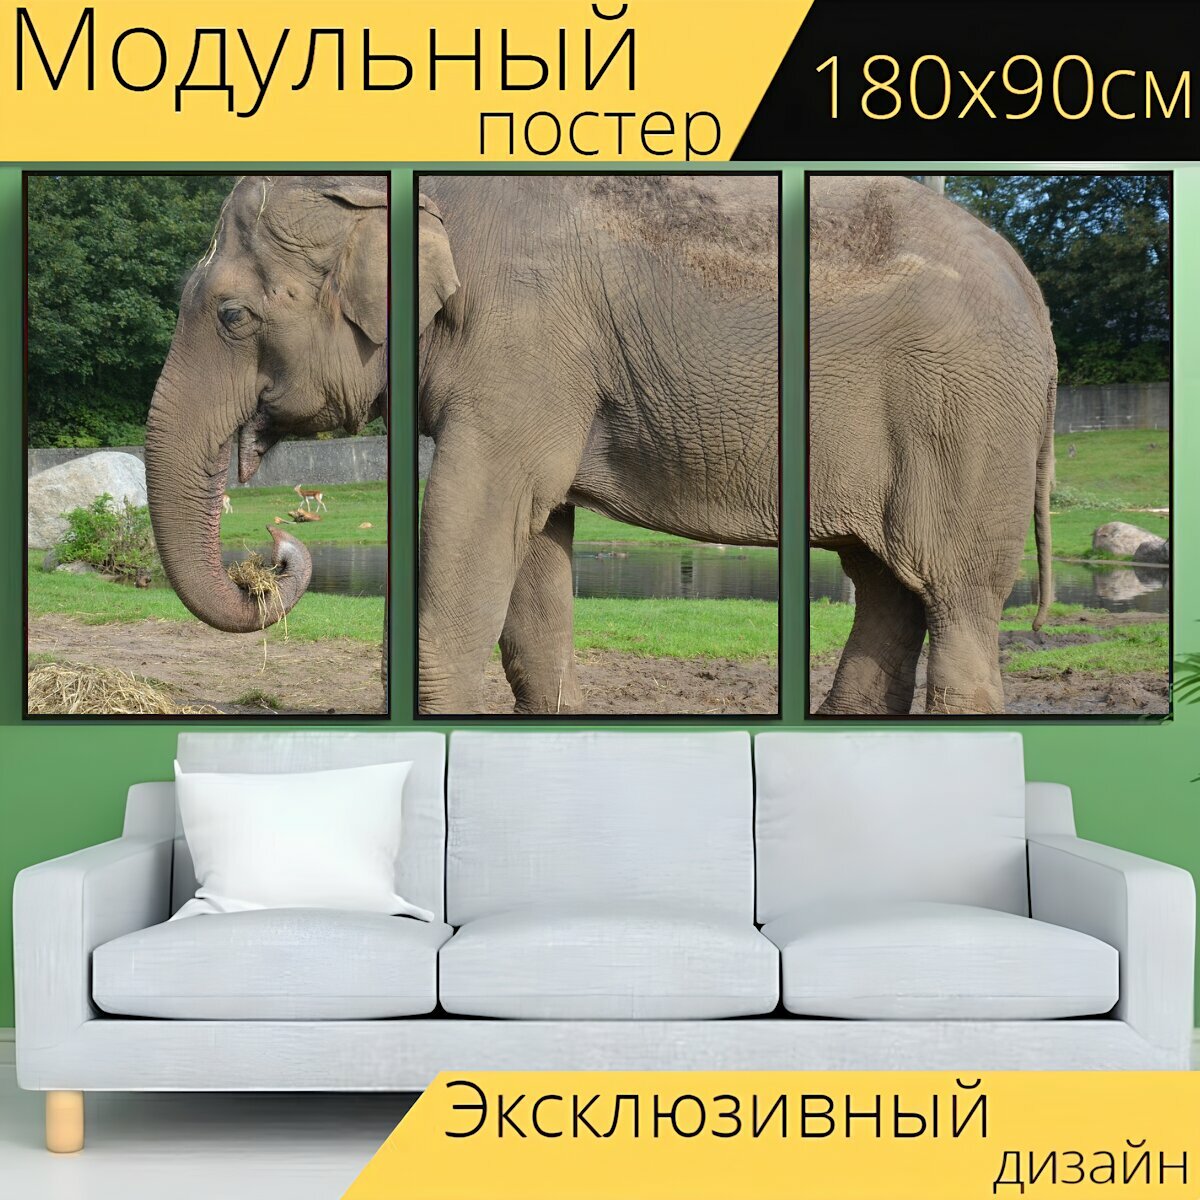 Модульный постер "Слон, ствол, млекопитающее" 180 x 90 см. для интерьера